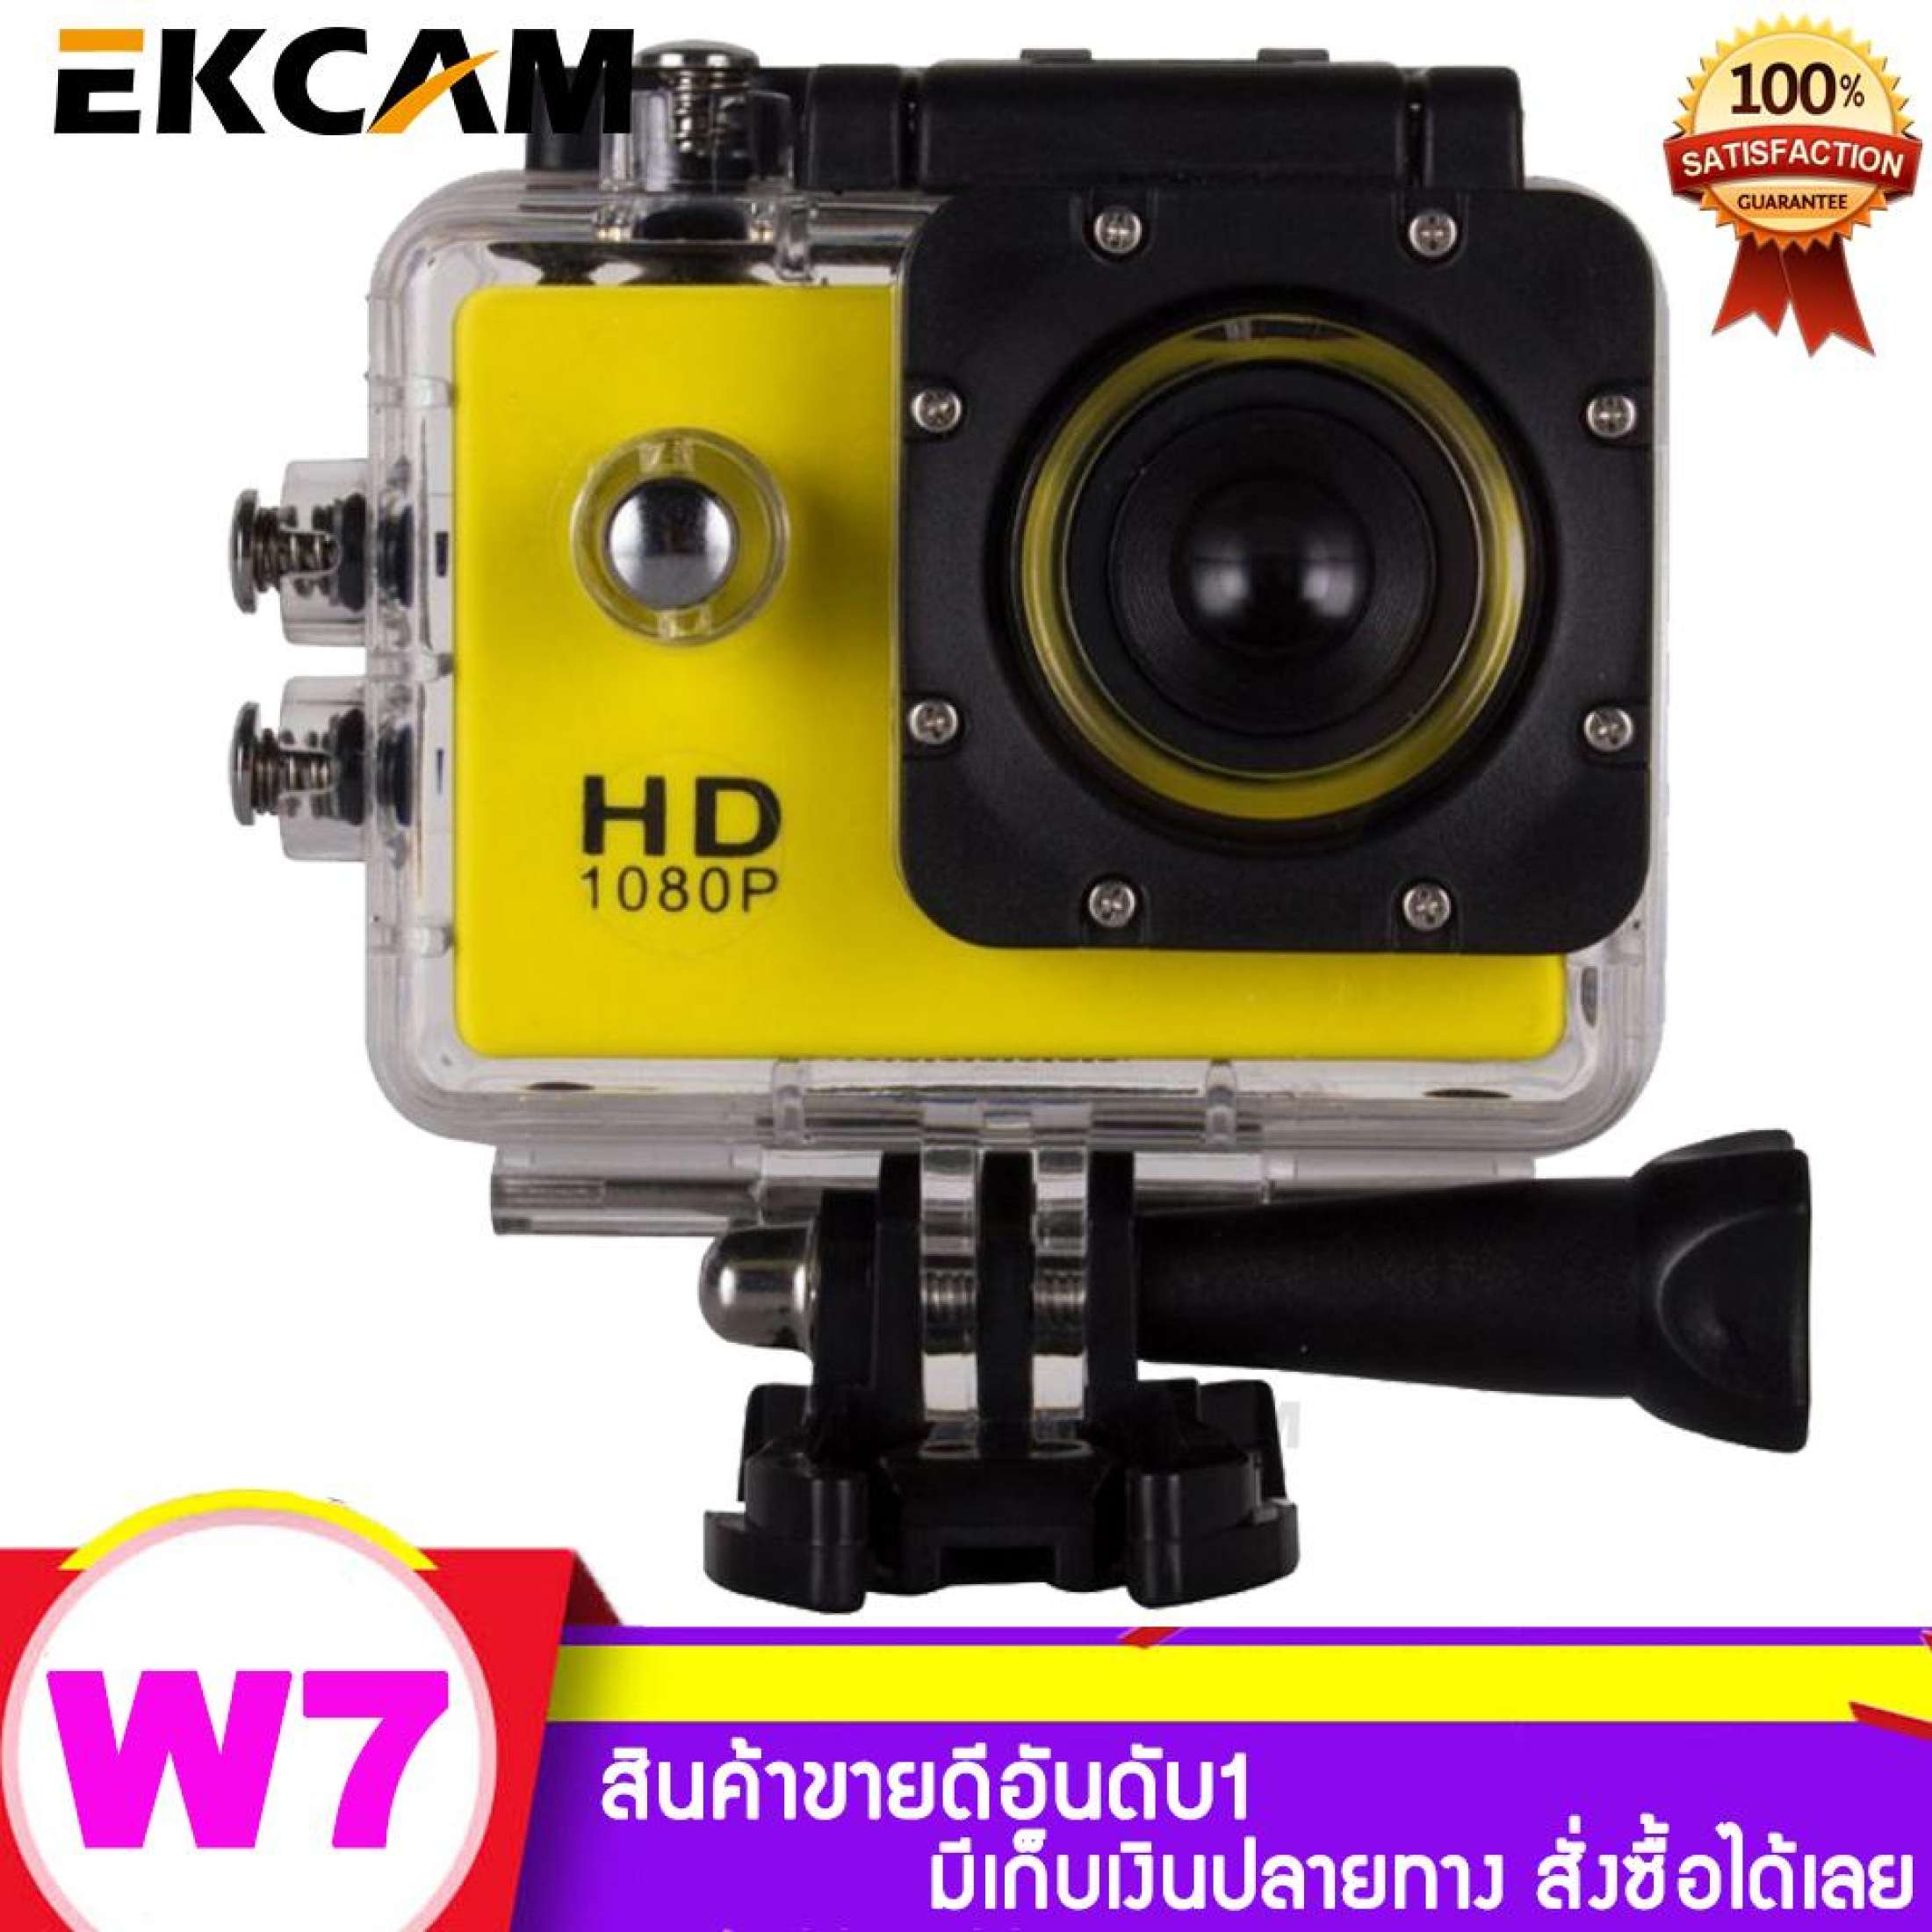 กล้องกันน้ำ/กันกระแทก (Action Camera)1080p กันน้ำได้ลึก 30 เมตร